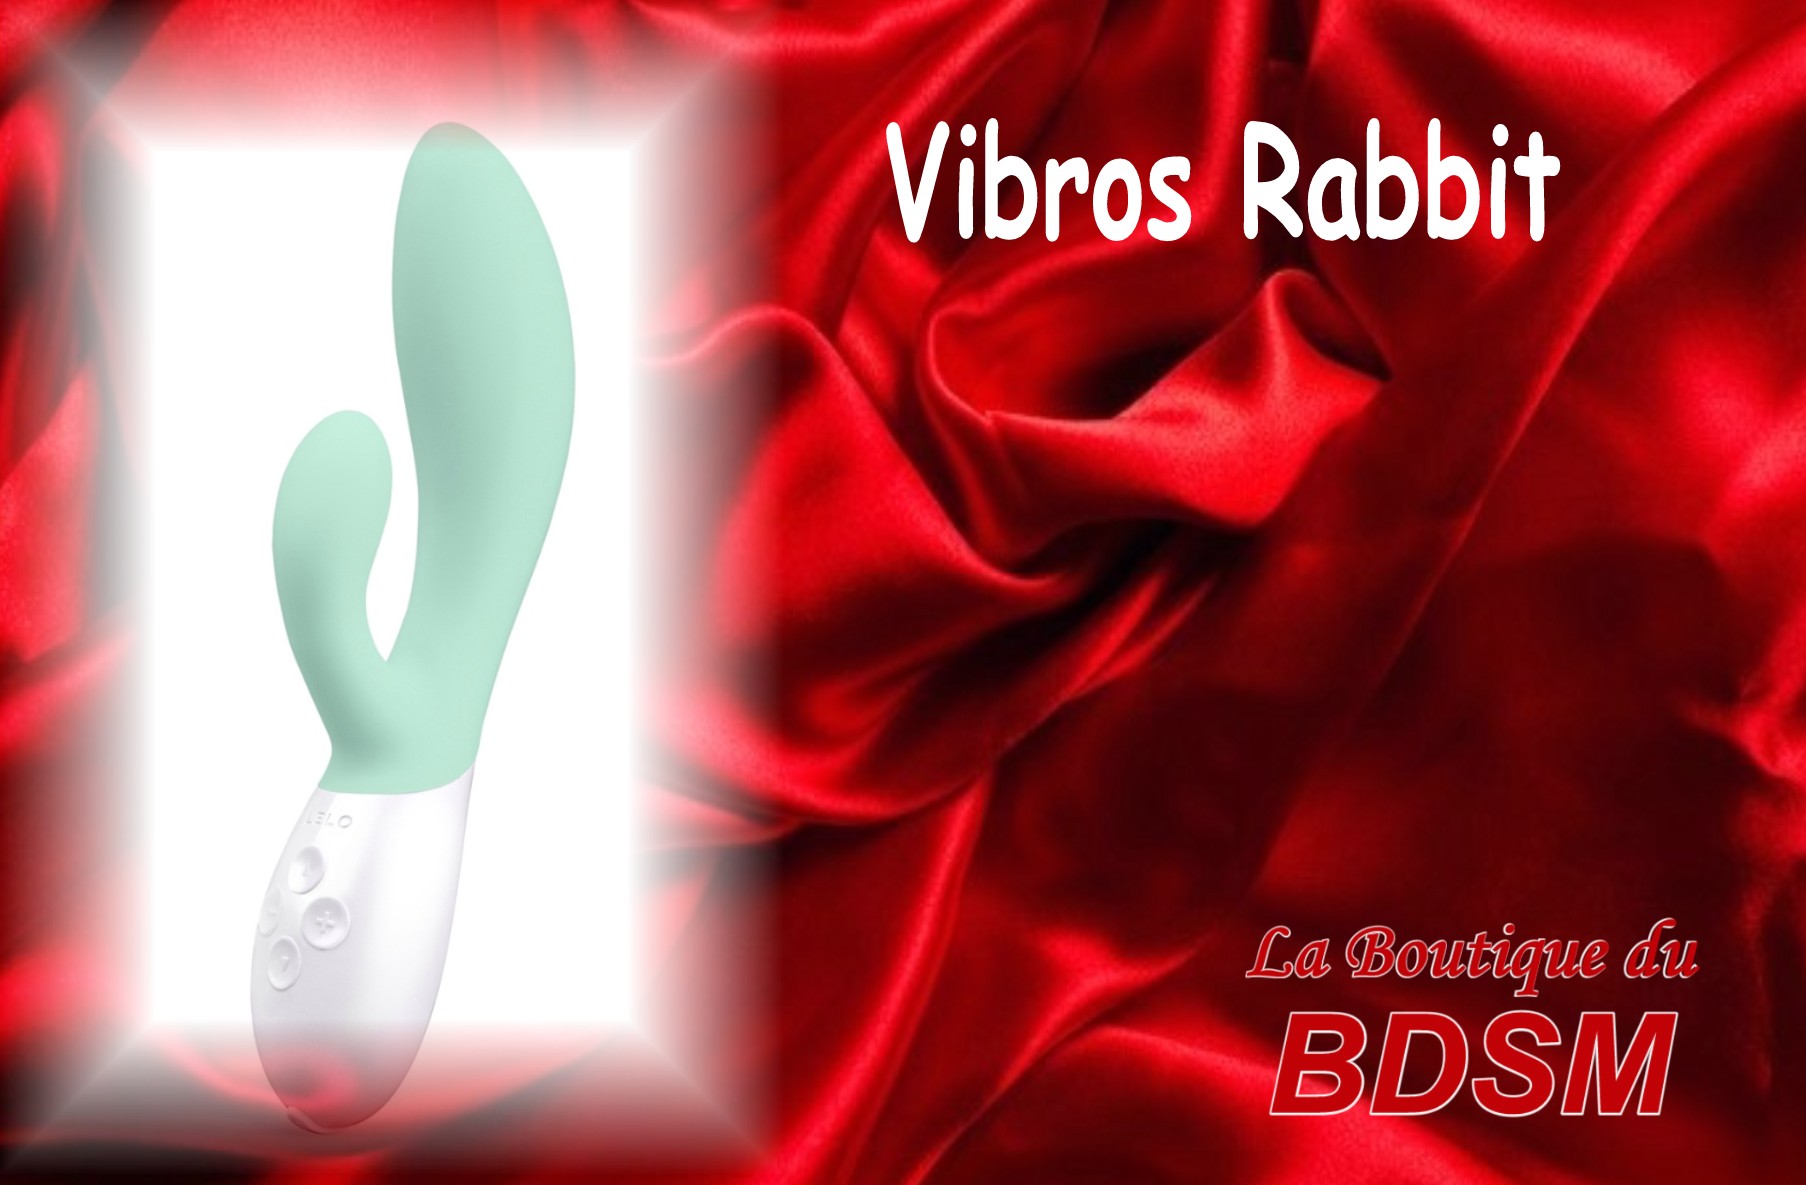 VIBROS RABBIT MAINXE 16